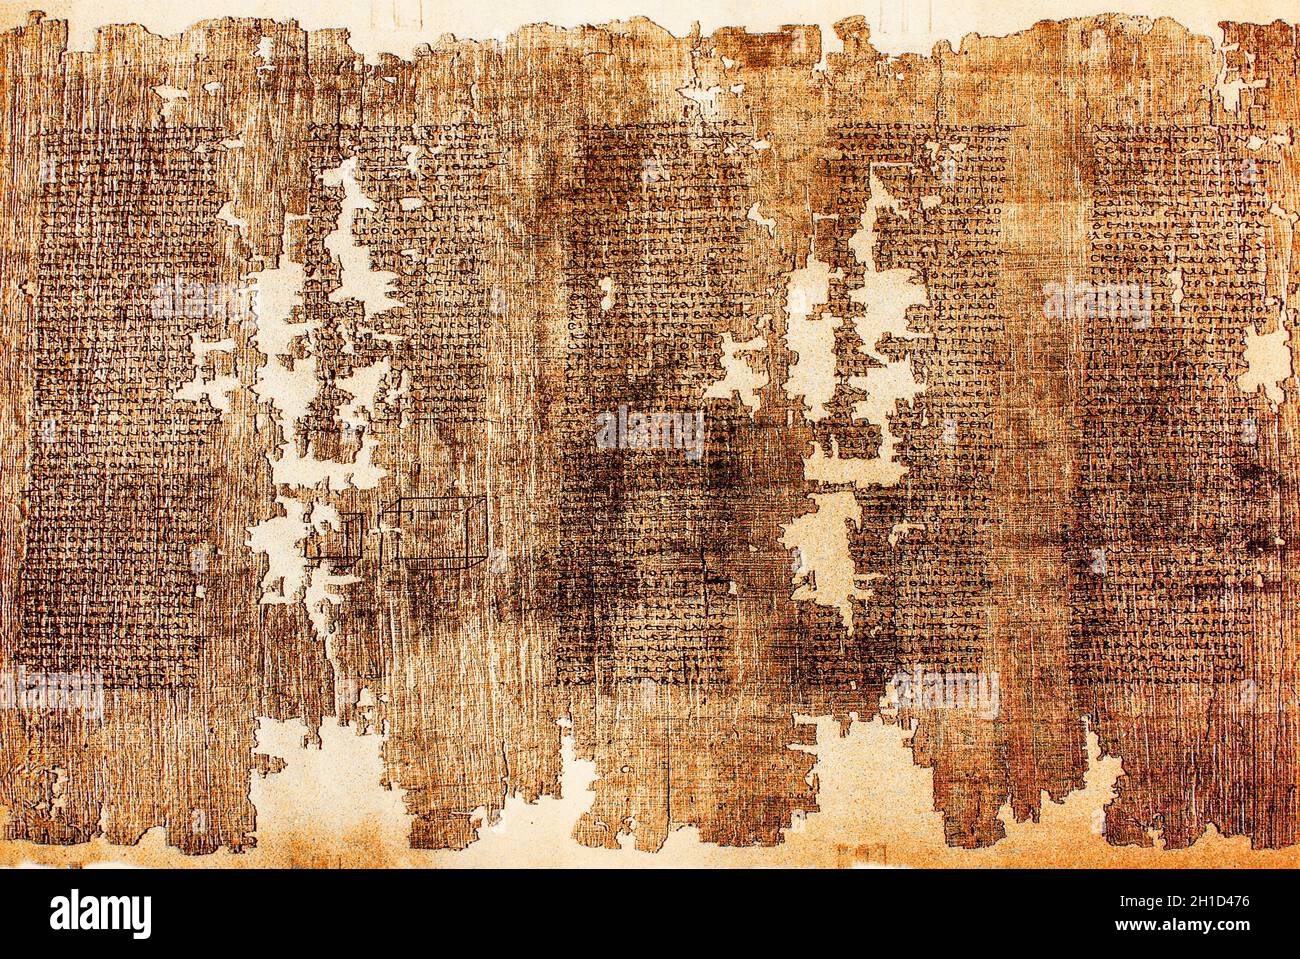 Comentario sobre el Teaeteto de Platón escrito en Hermópolis, Egipto, siglo II AC. Staatliche Museen zu Berlin, pág. 9782 Foto de stock